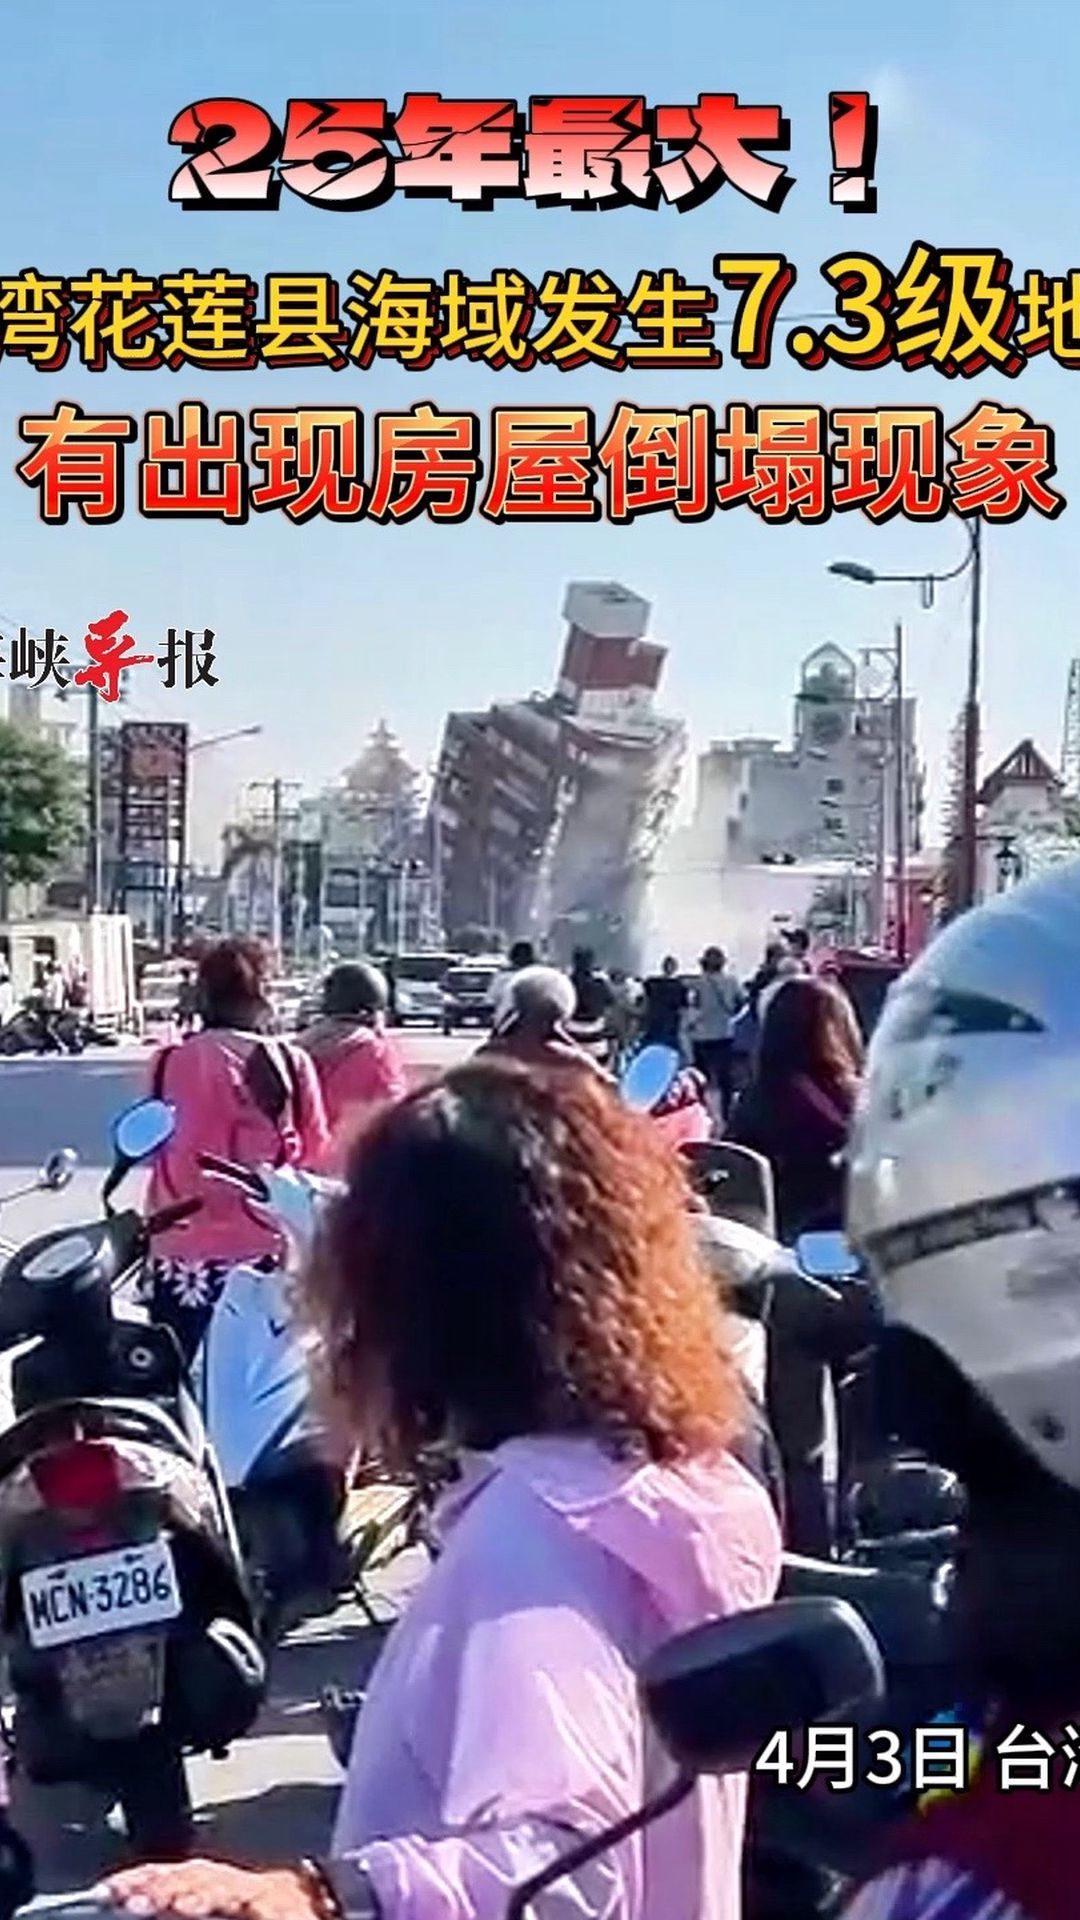 台湾花莲县海域发生73级地震,有出现房屋倒塌现象